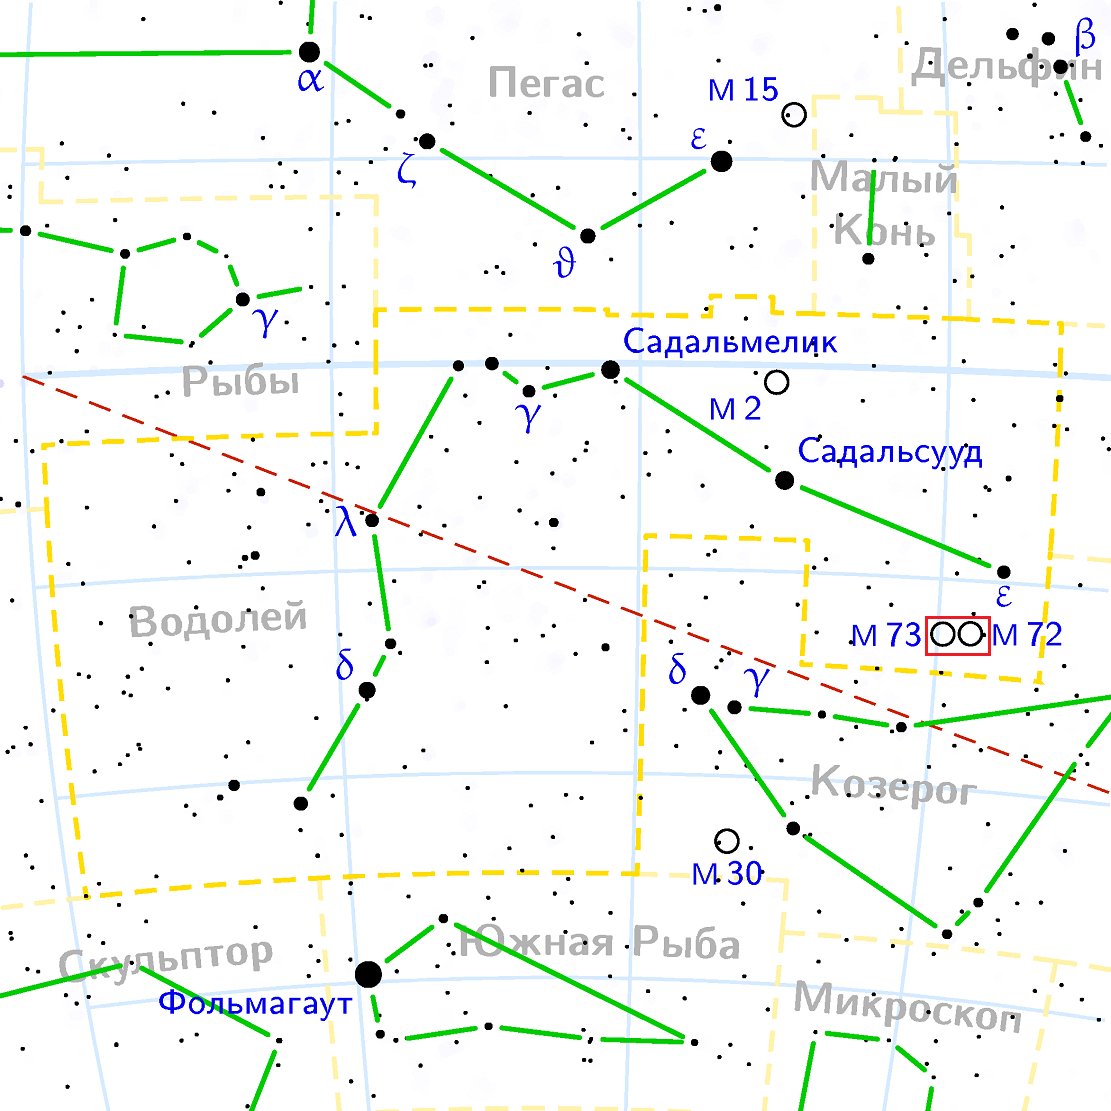 Position de l'amas Messier 73 dans la constellation du Verseau